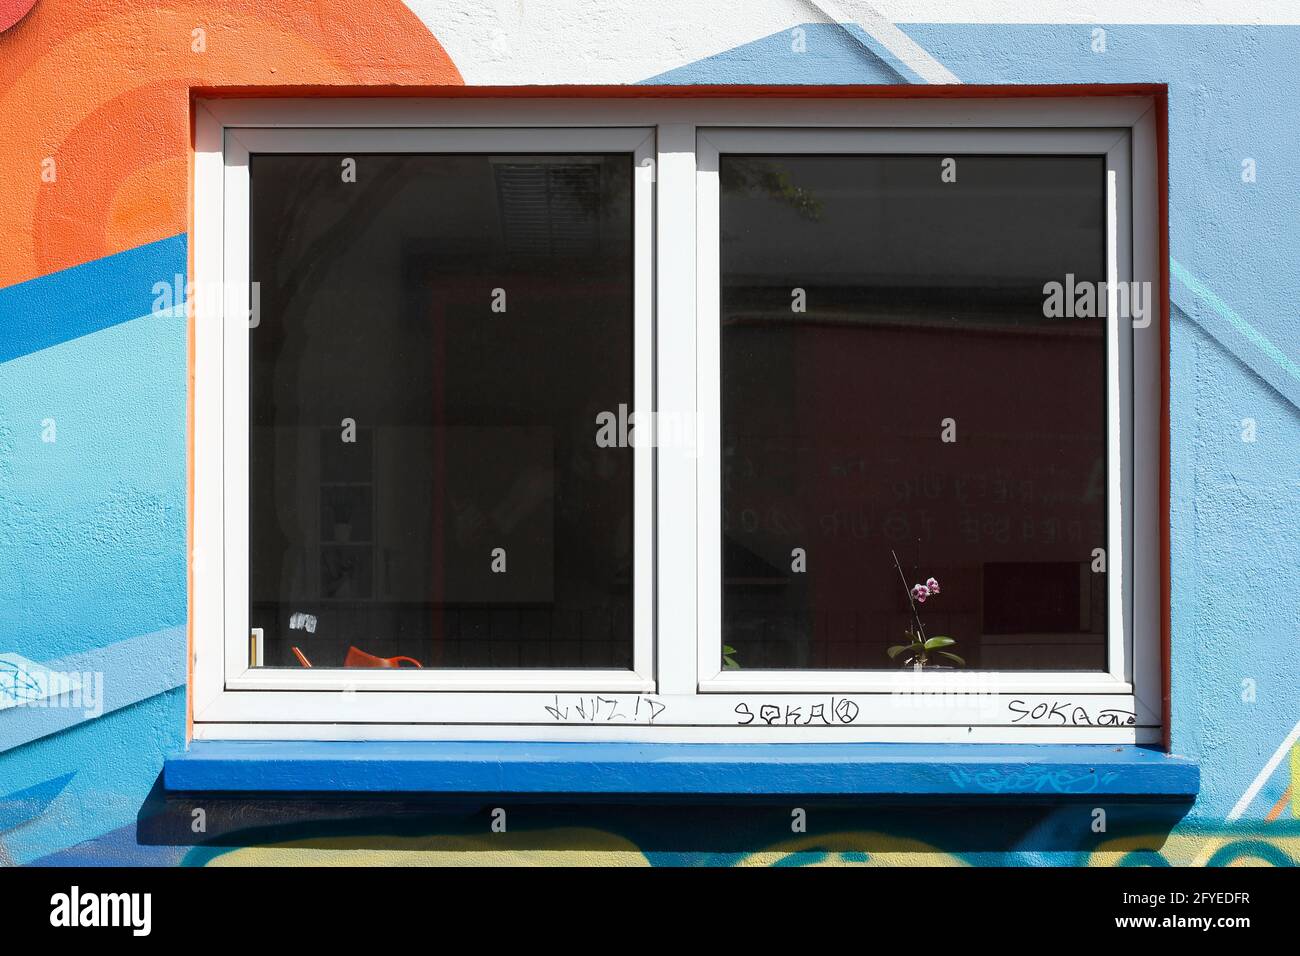 Fenster an einer bunt bemalten Hauswand, Deutschland, Europa Stock Photo